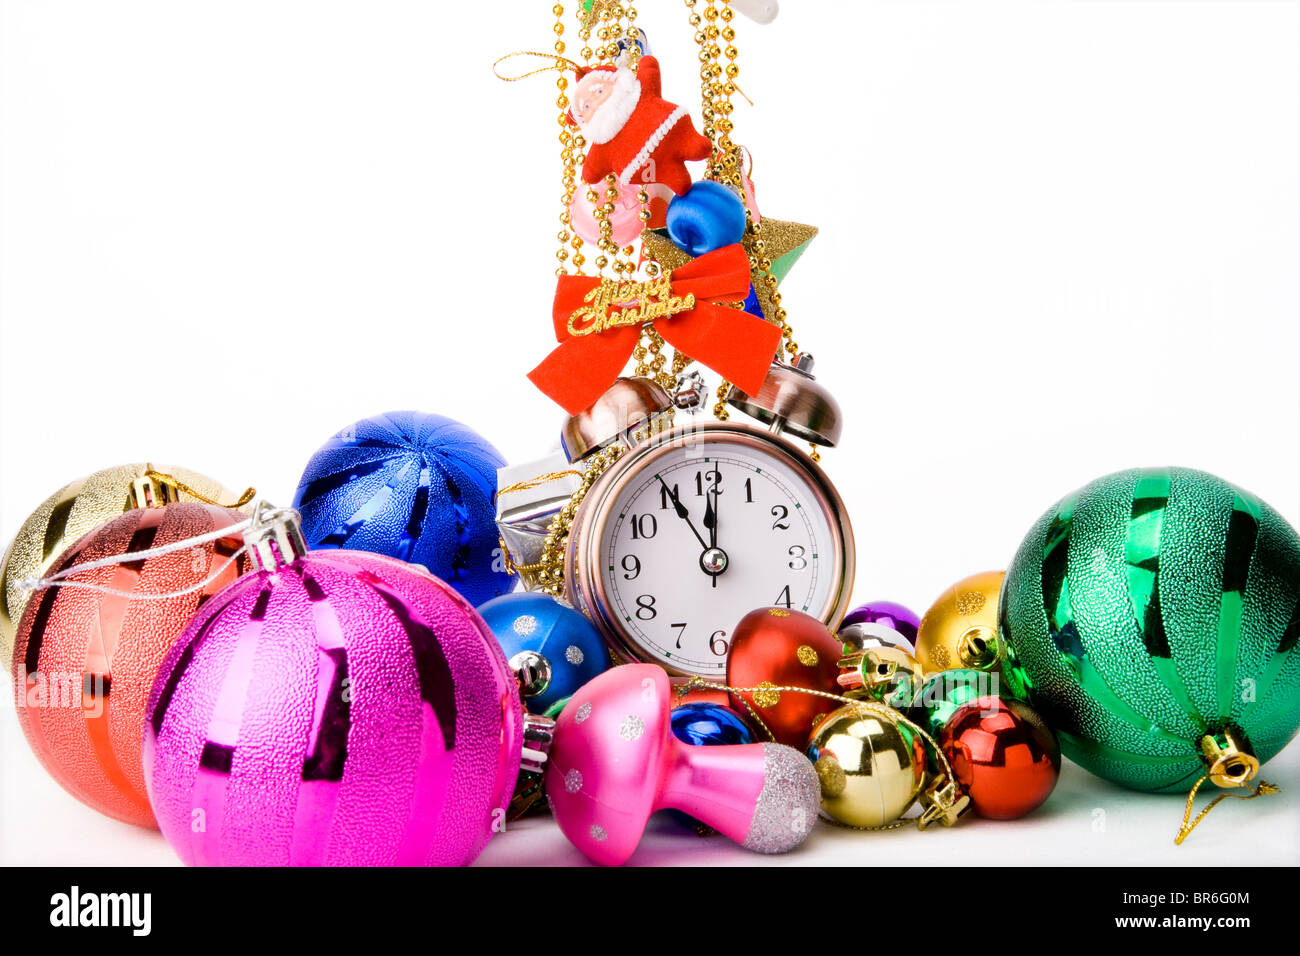 Wecker und Weihnachtsdekorationen auf einem weißen Hintergrund-Christmas Countdown Stockfoto